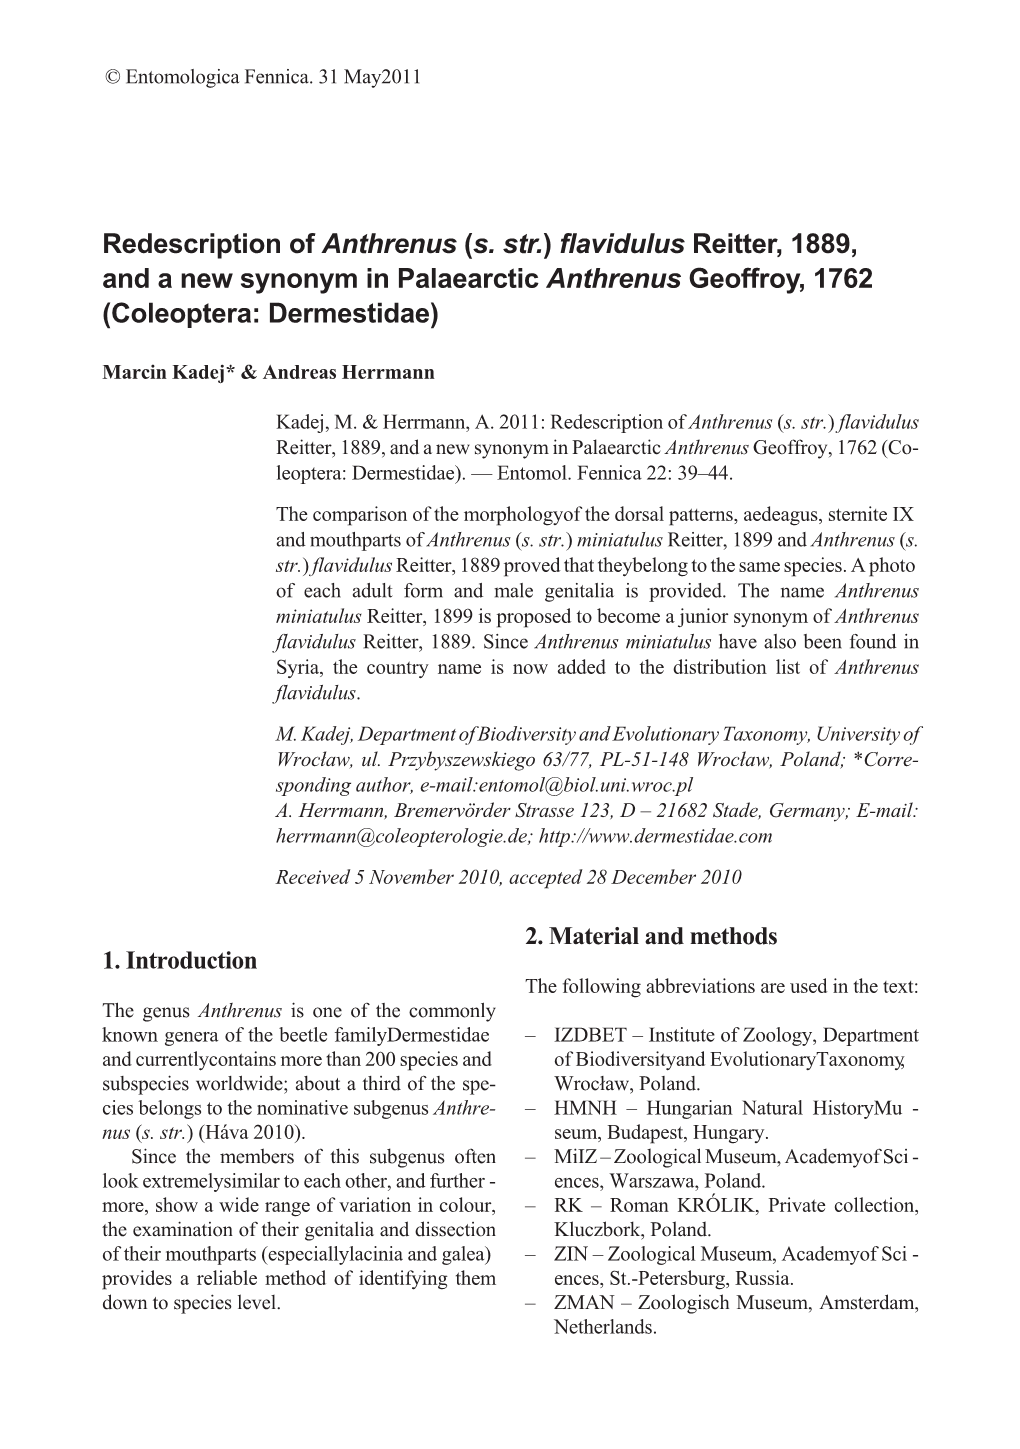 Redescription of Anthrenus (S